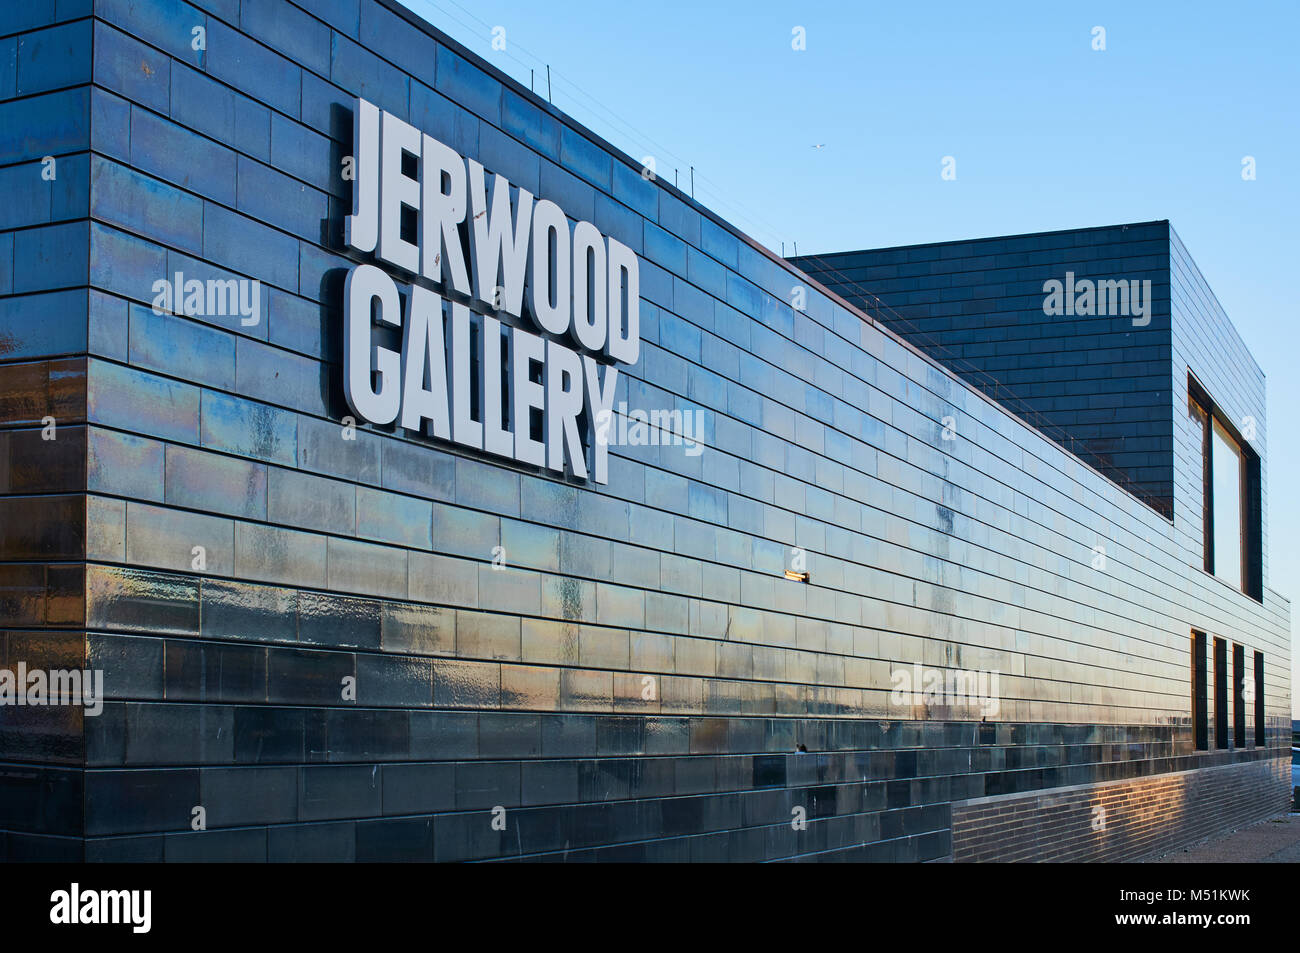 Die neue Jerwood Galerie zeitgenössischer Kunst Raum auf dem Stade bei Hastings, East Sussex, Großbritannien Stockfoto